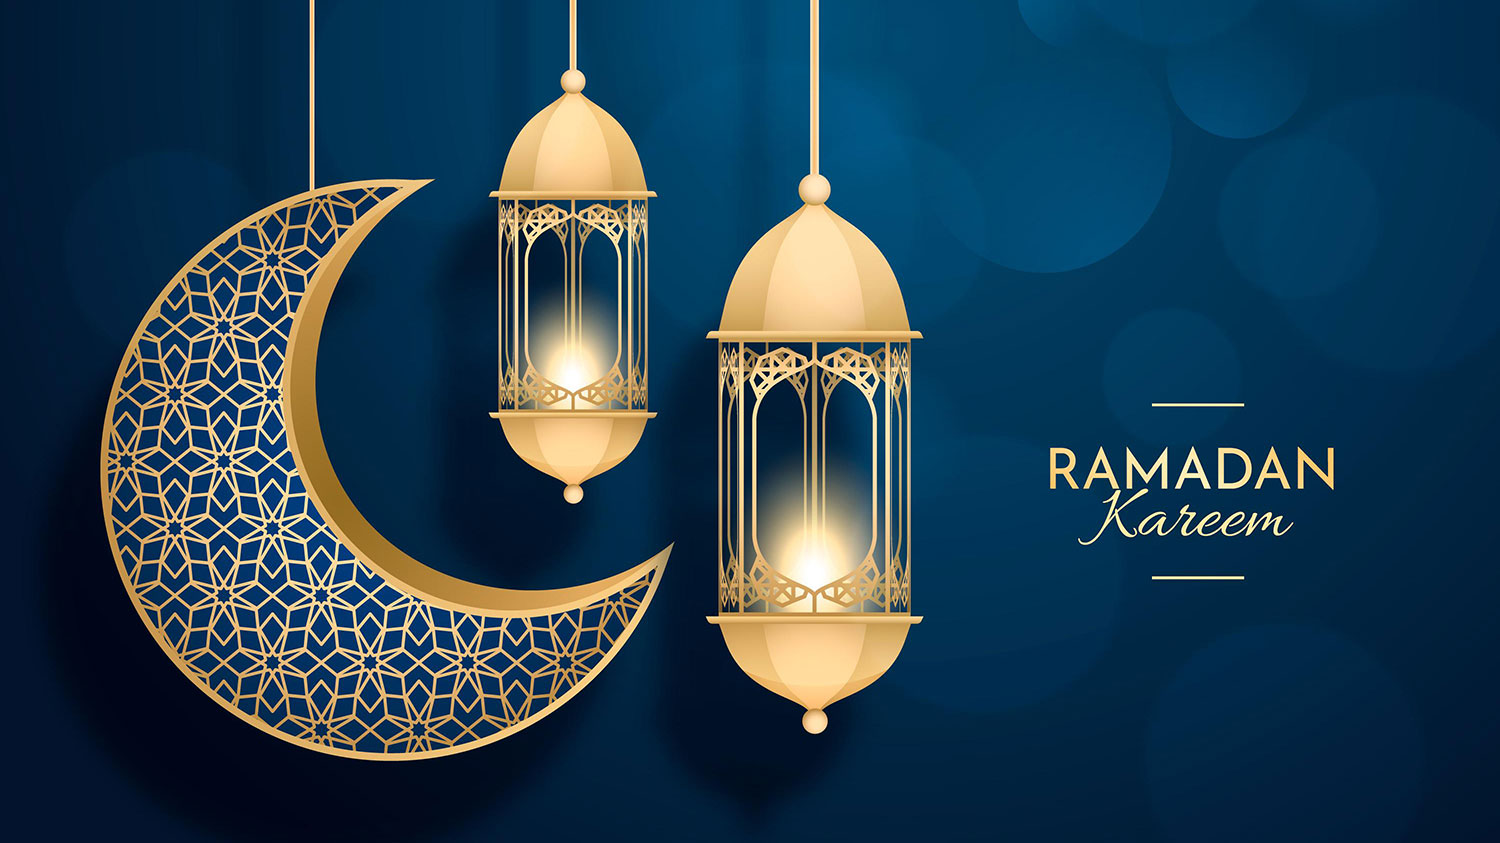 تصویر ماه و فانوس برای طراحی پوستر ماه رمضان